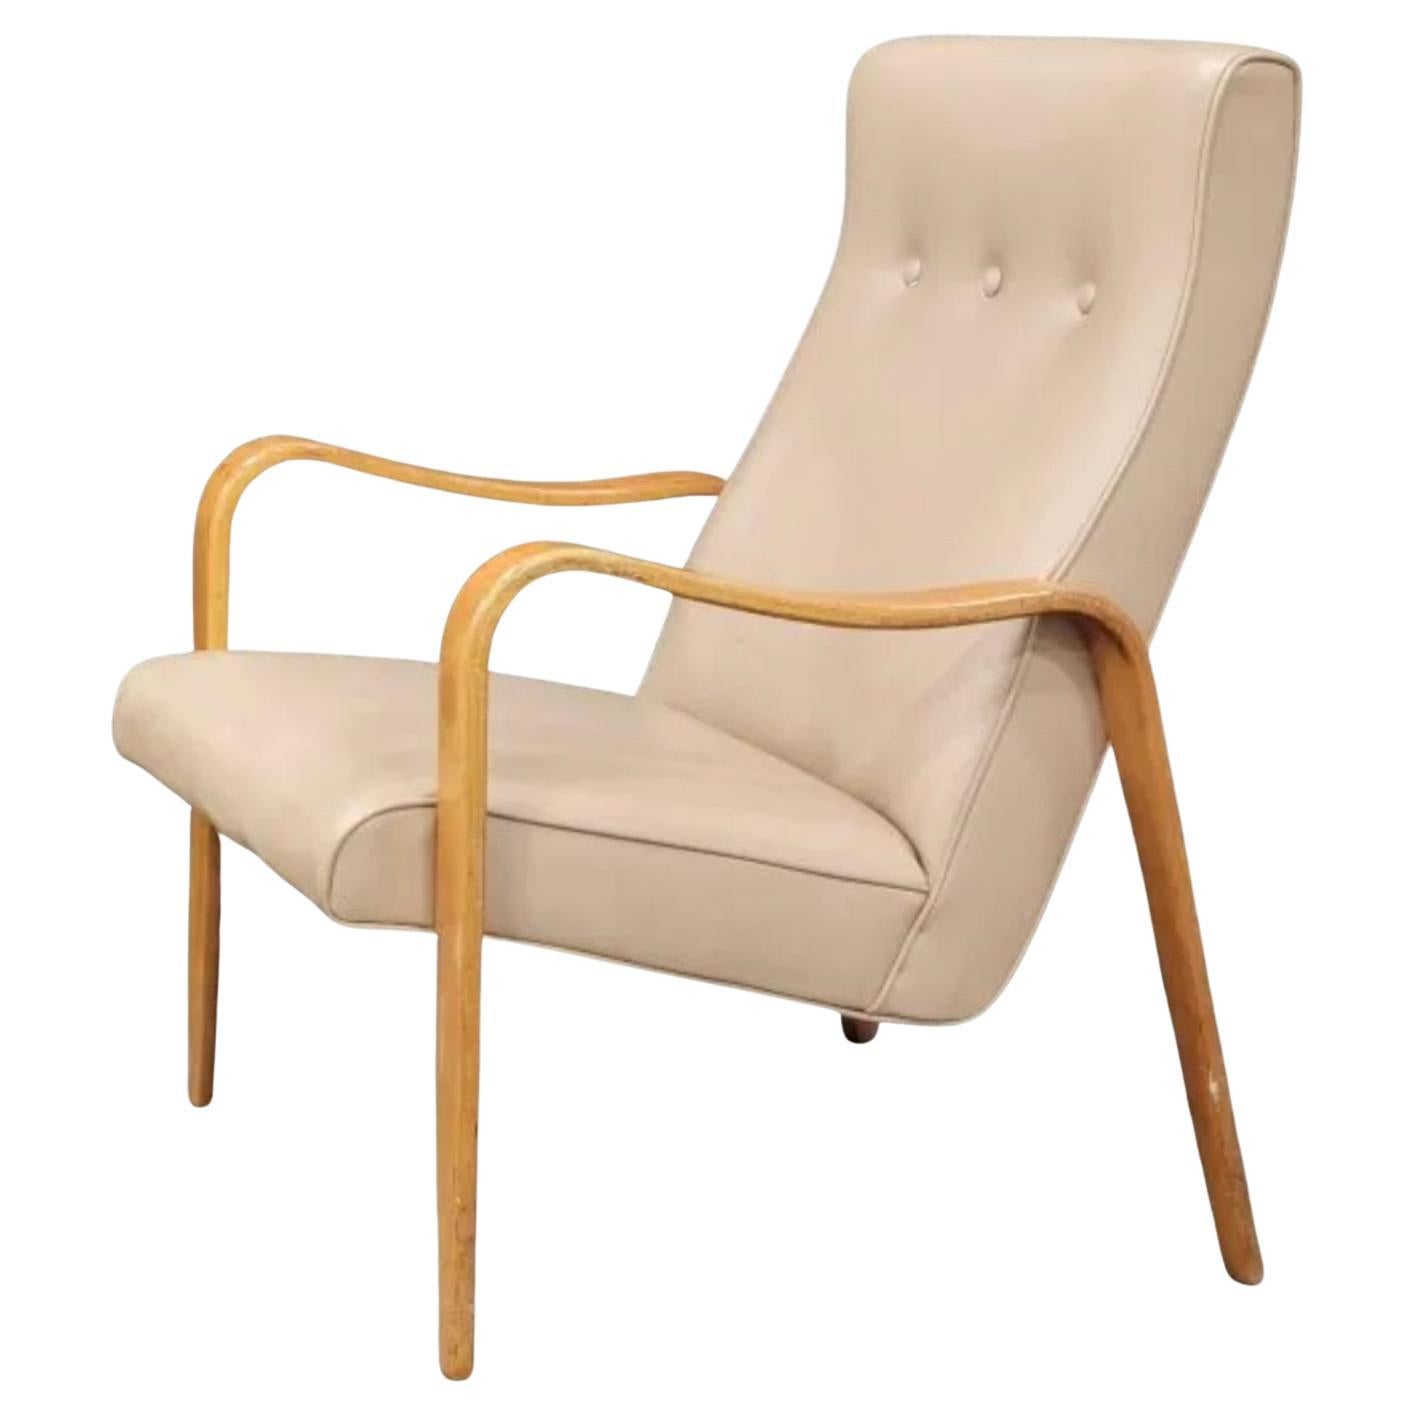 Paar moderne Thonet Bugholz-Birkenholz-Lounge-Sessel aus der Mitte des Jahrhunderts. Hat original Medium Pastell Tan Sand Vinylpolsterung. Toller Vintage-Zustand. Zeitloses Stuhldesign von Thonet. Gebogene Armlehnen aus Birkenbugholz. Stühle werden